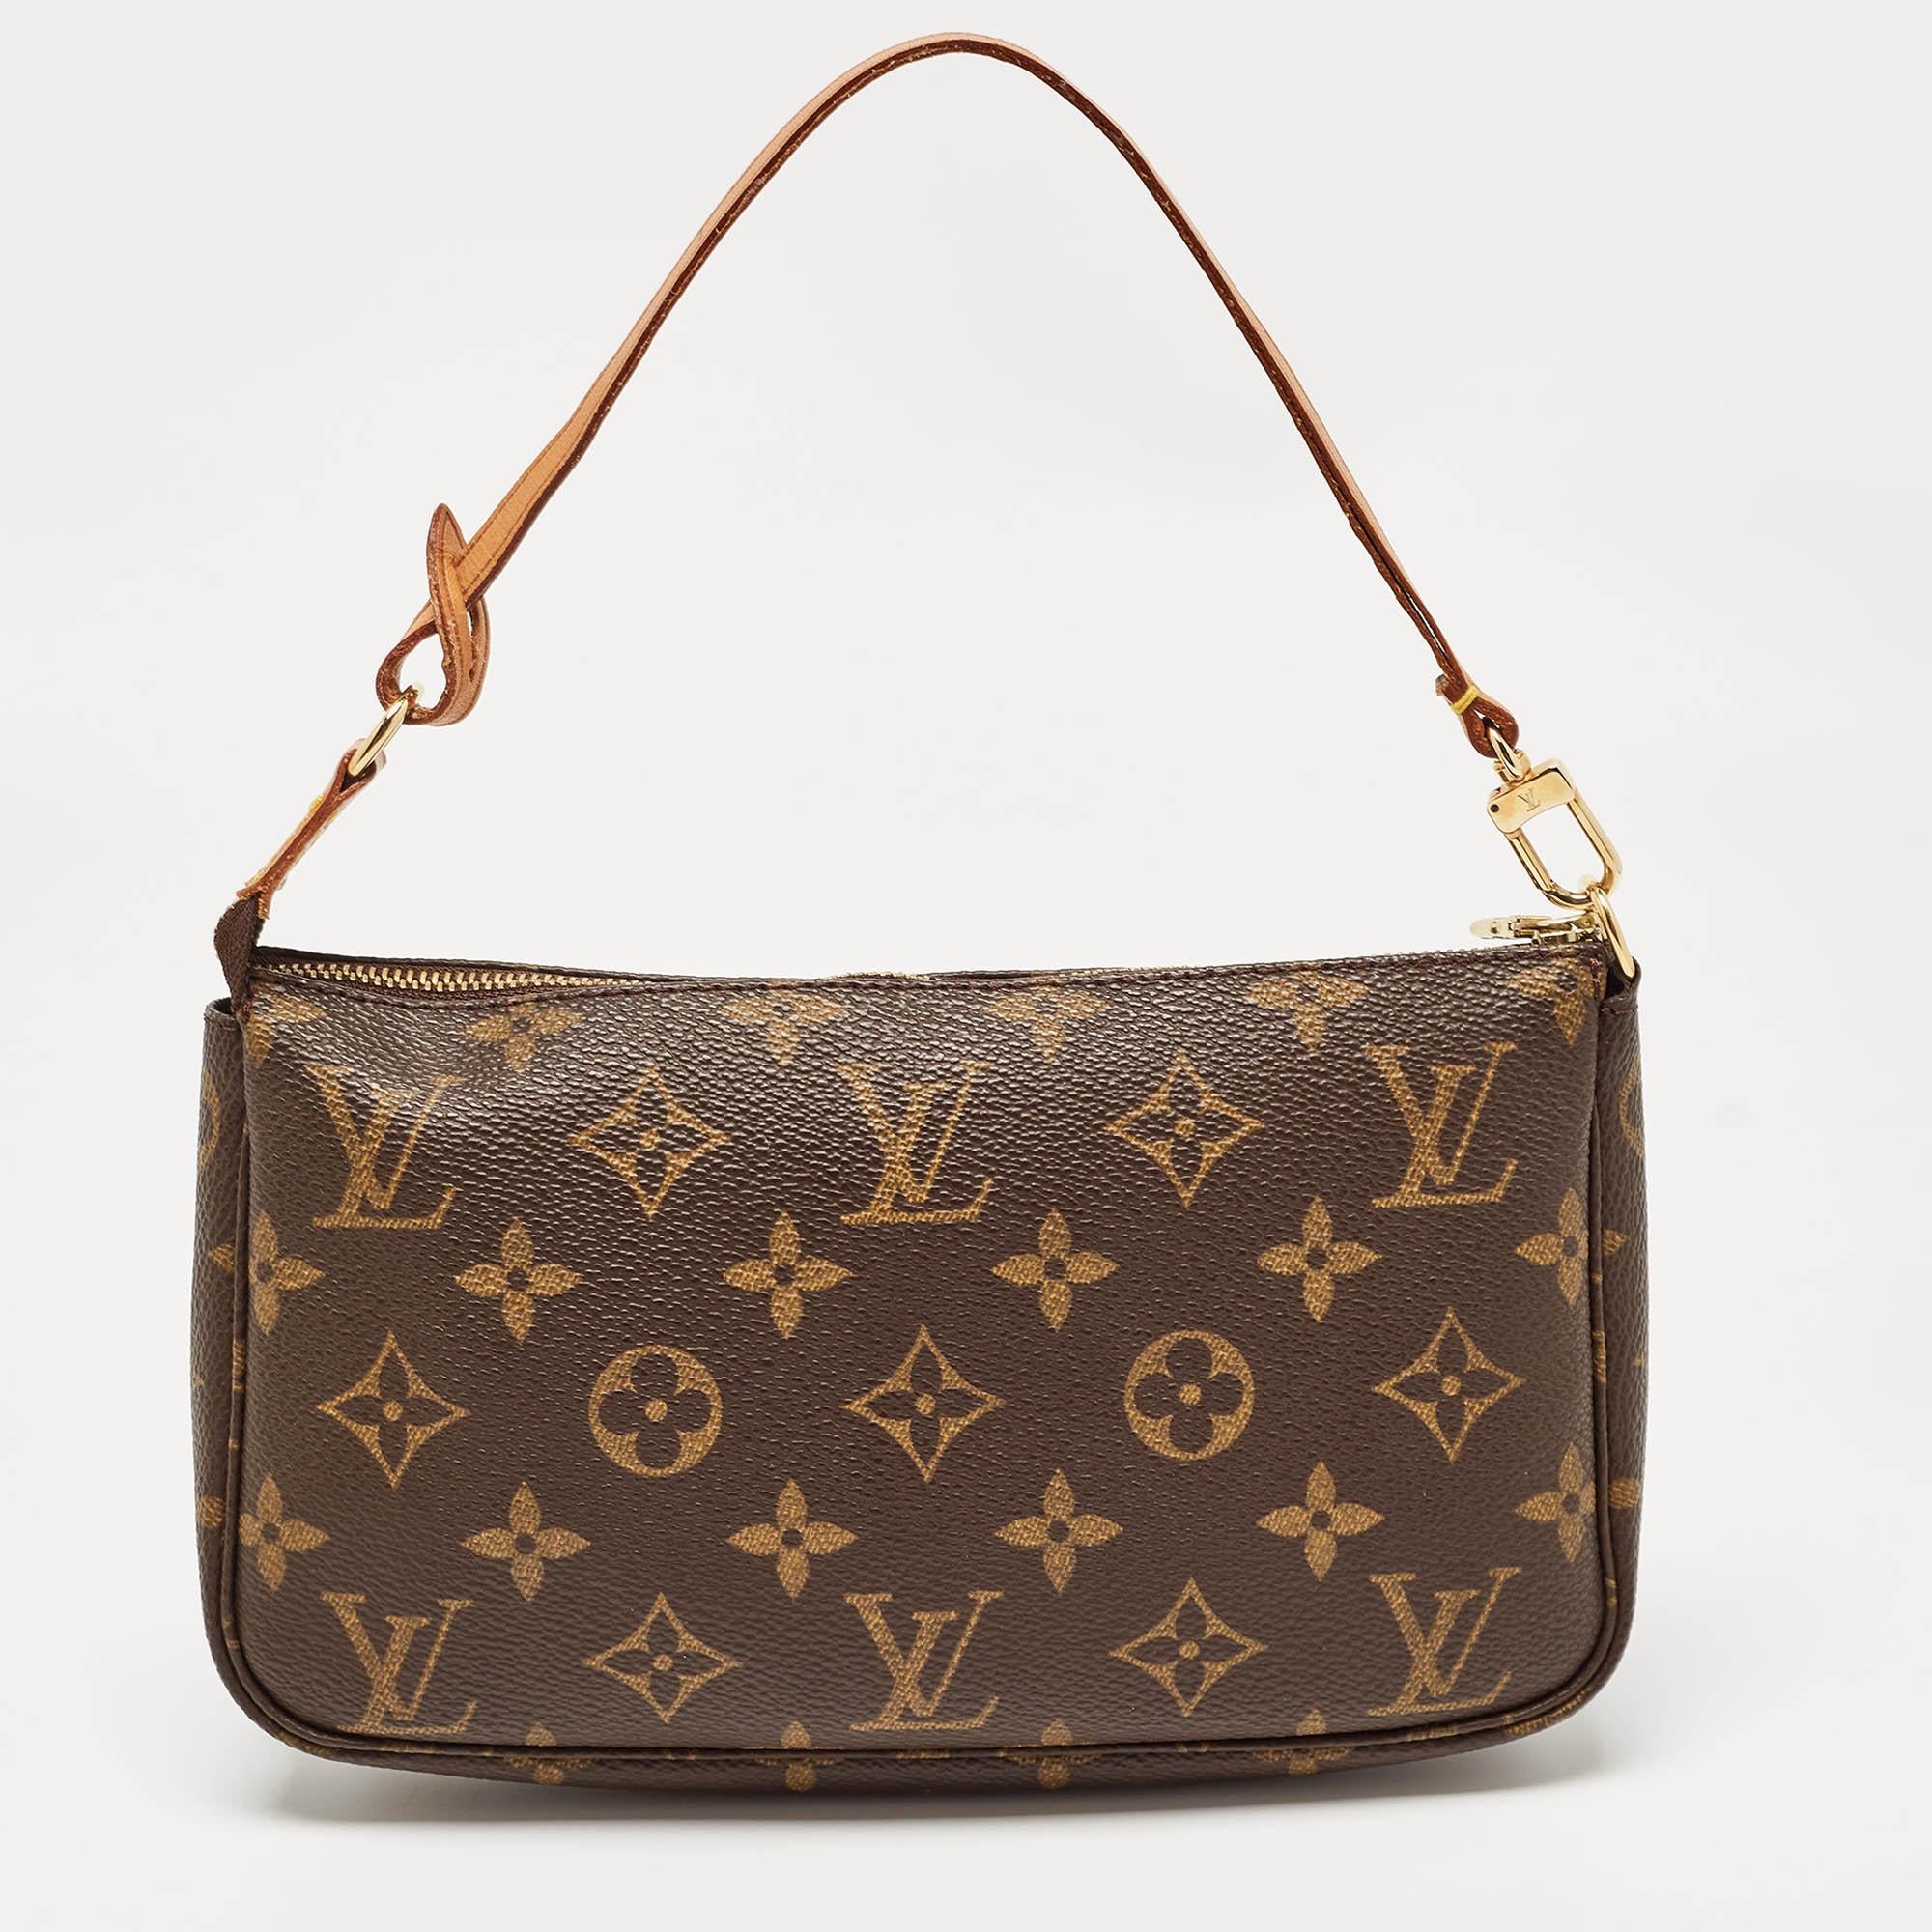 Die Kreationen von Louis Vuitton sind wegen ihres hohen Stils und ihrer Funktionalität beliebt. Diese Tasche ist, wie alle anderen Handtaschen auch, robust und stilvoll. Die Tasche ist fein verarbeitet und bietet ein luxuriöses Erlebnis. Der